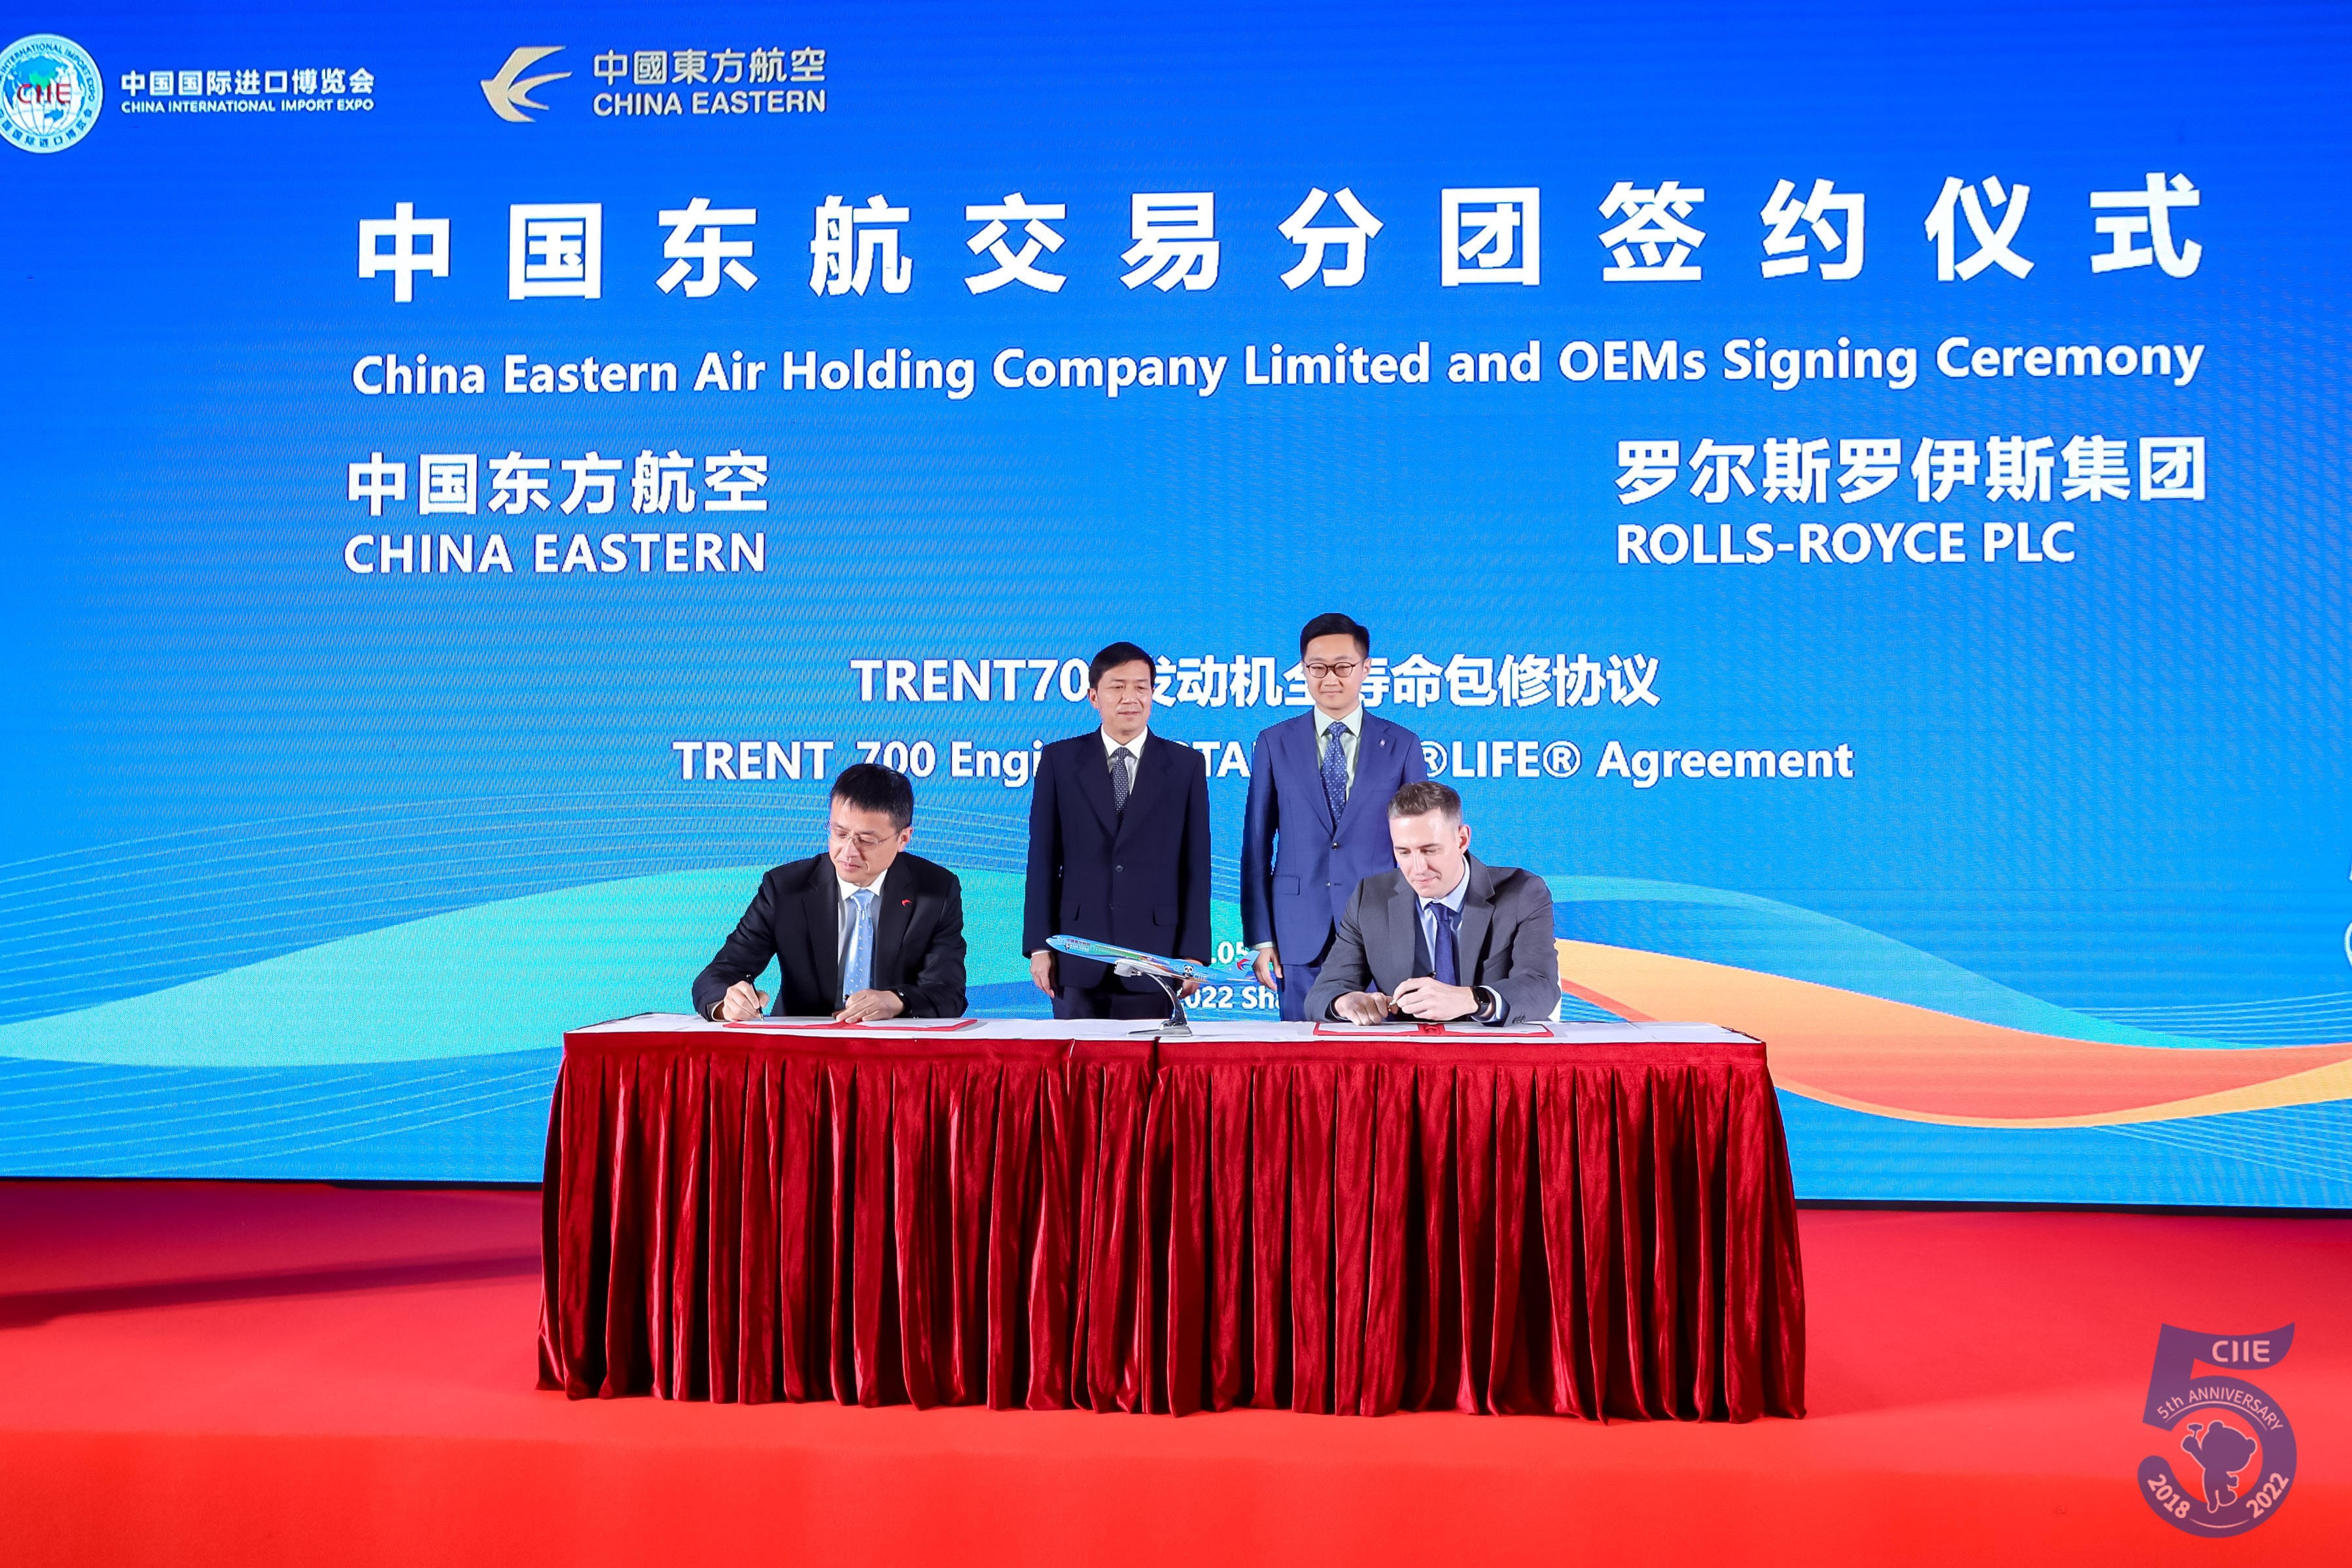 罗尔斯-罗伊斯与中国东方航空签署遄达700发动机TotalCare协议